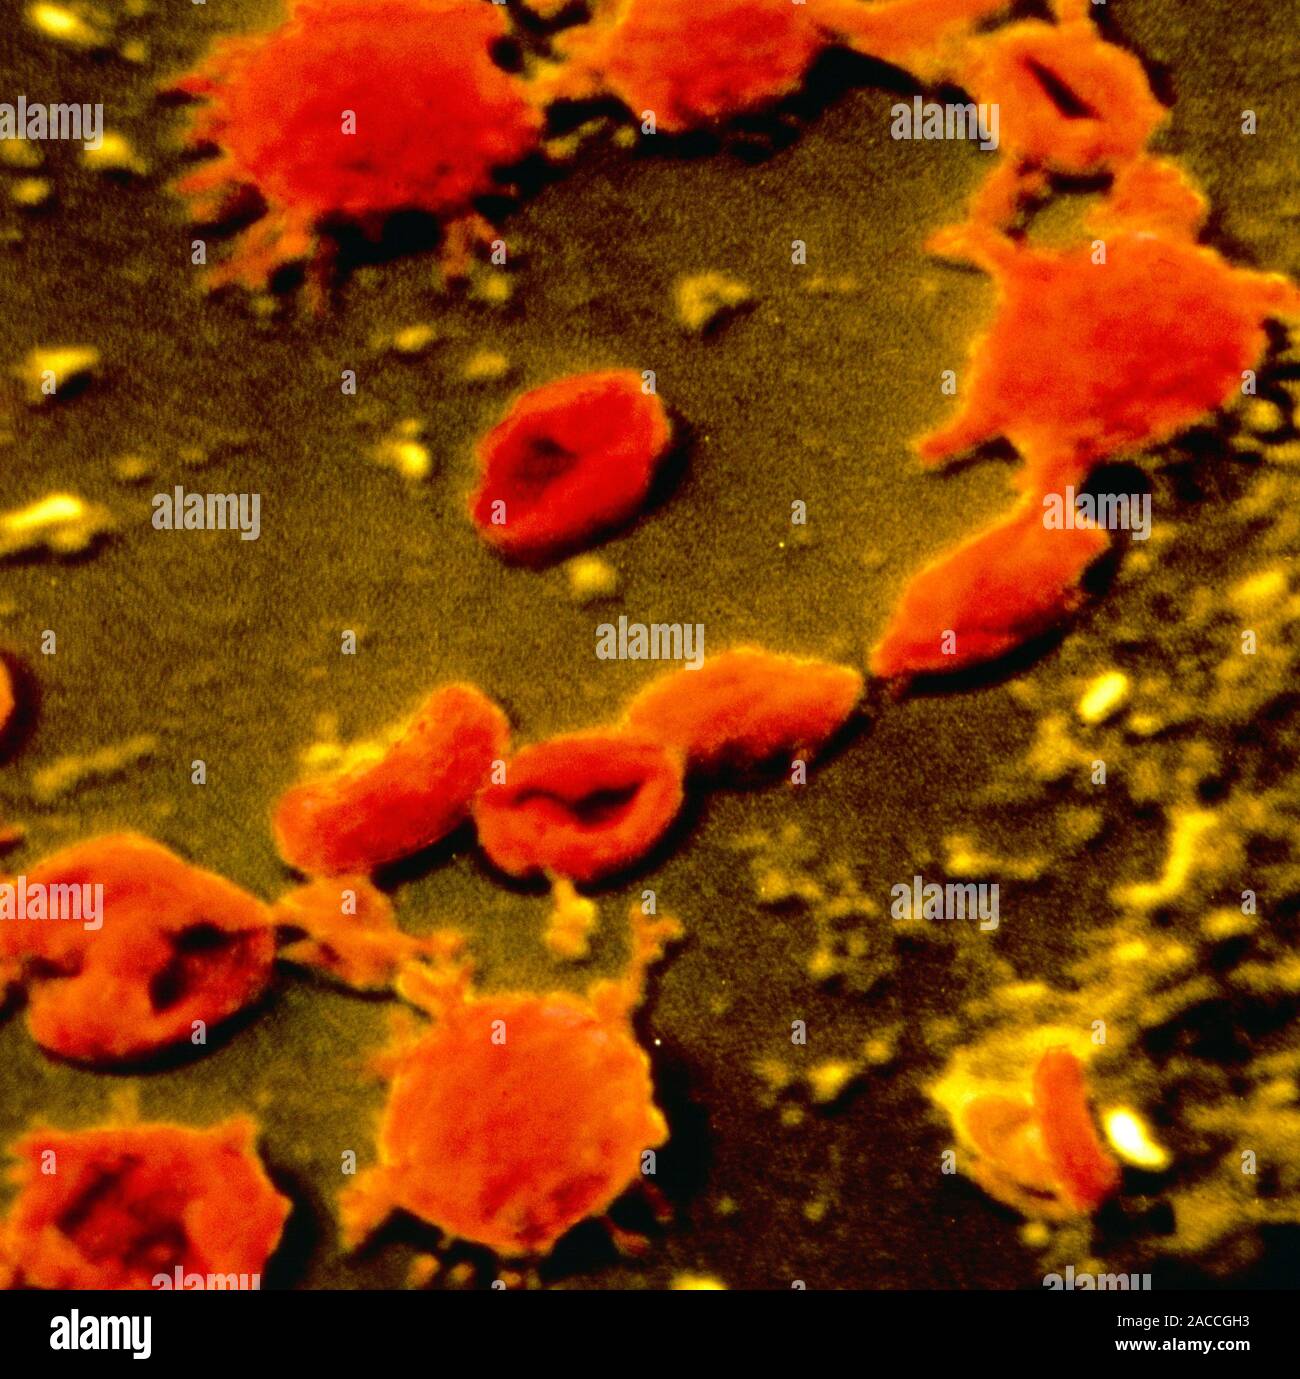 Микоплазма зев. Клетки Mycoplasma pneumoniae окружены. Микоплазма гемофелис. Микоплазма пневмония микробиология.